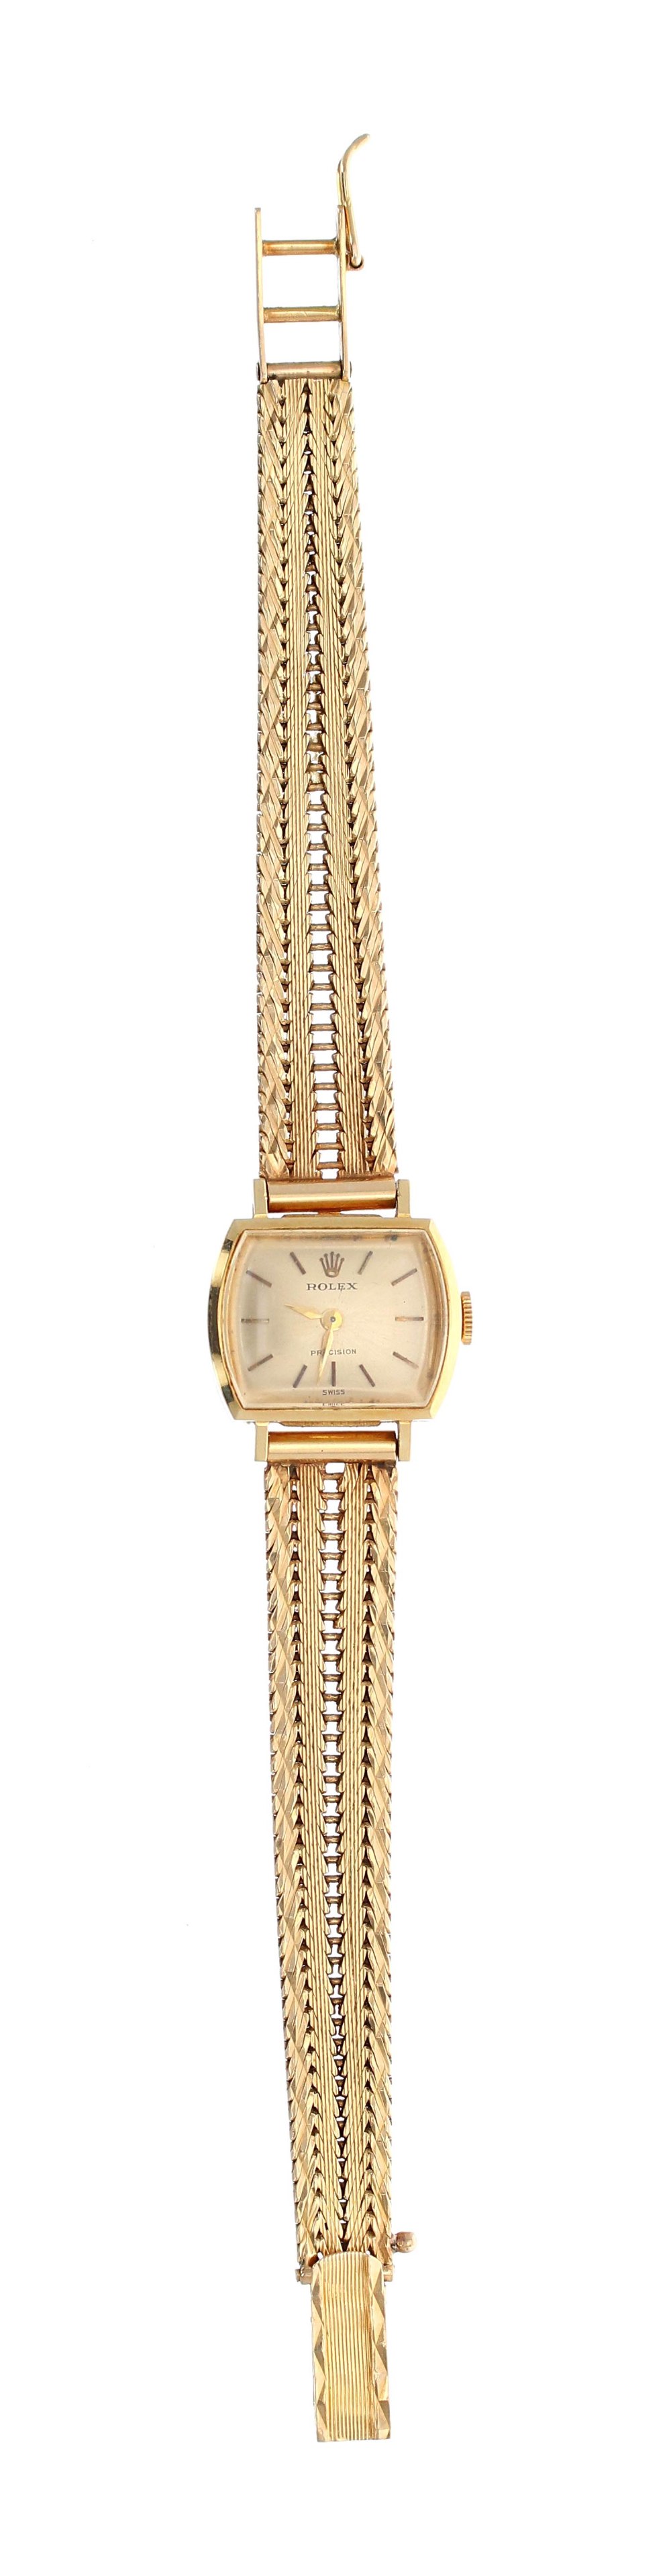 Rolex Precision 18k lady's bracelet watch,